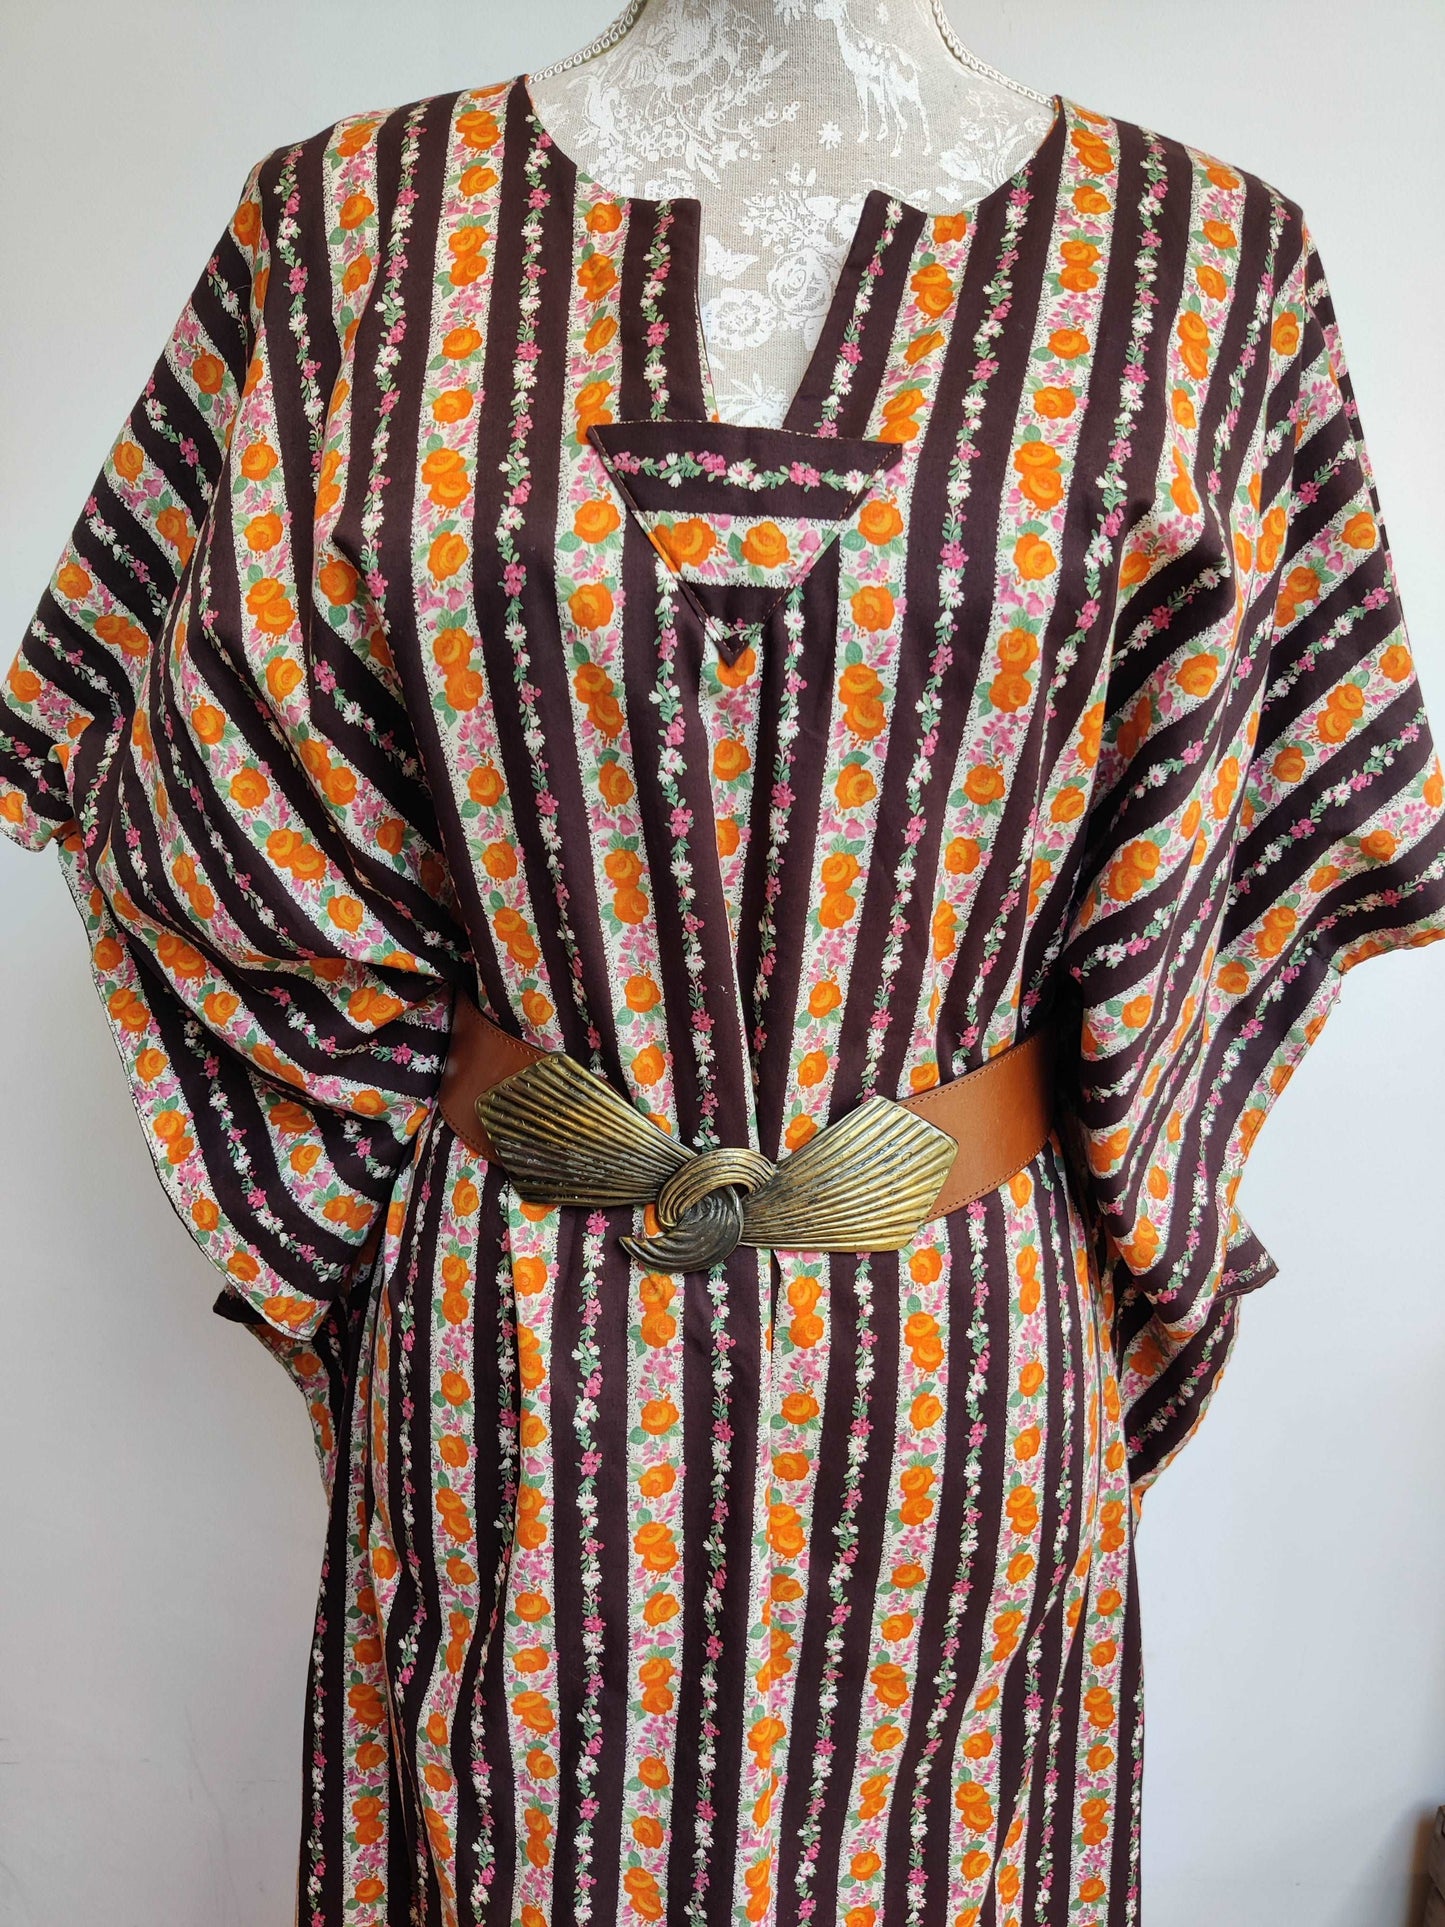 vintage kaftan dress with floral print. size 10-12